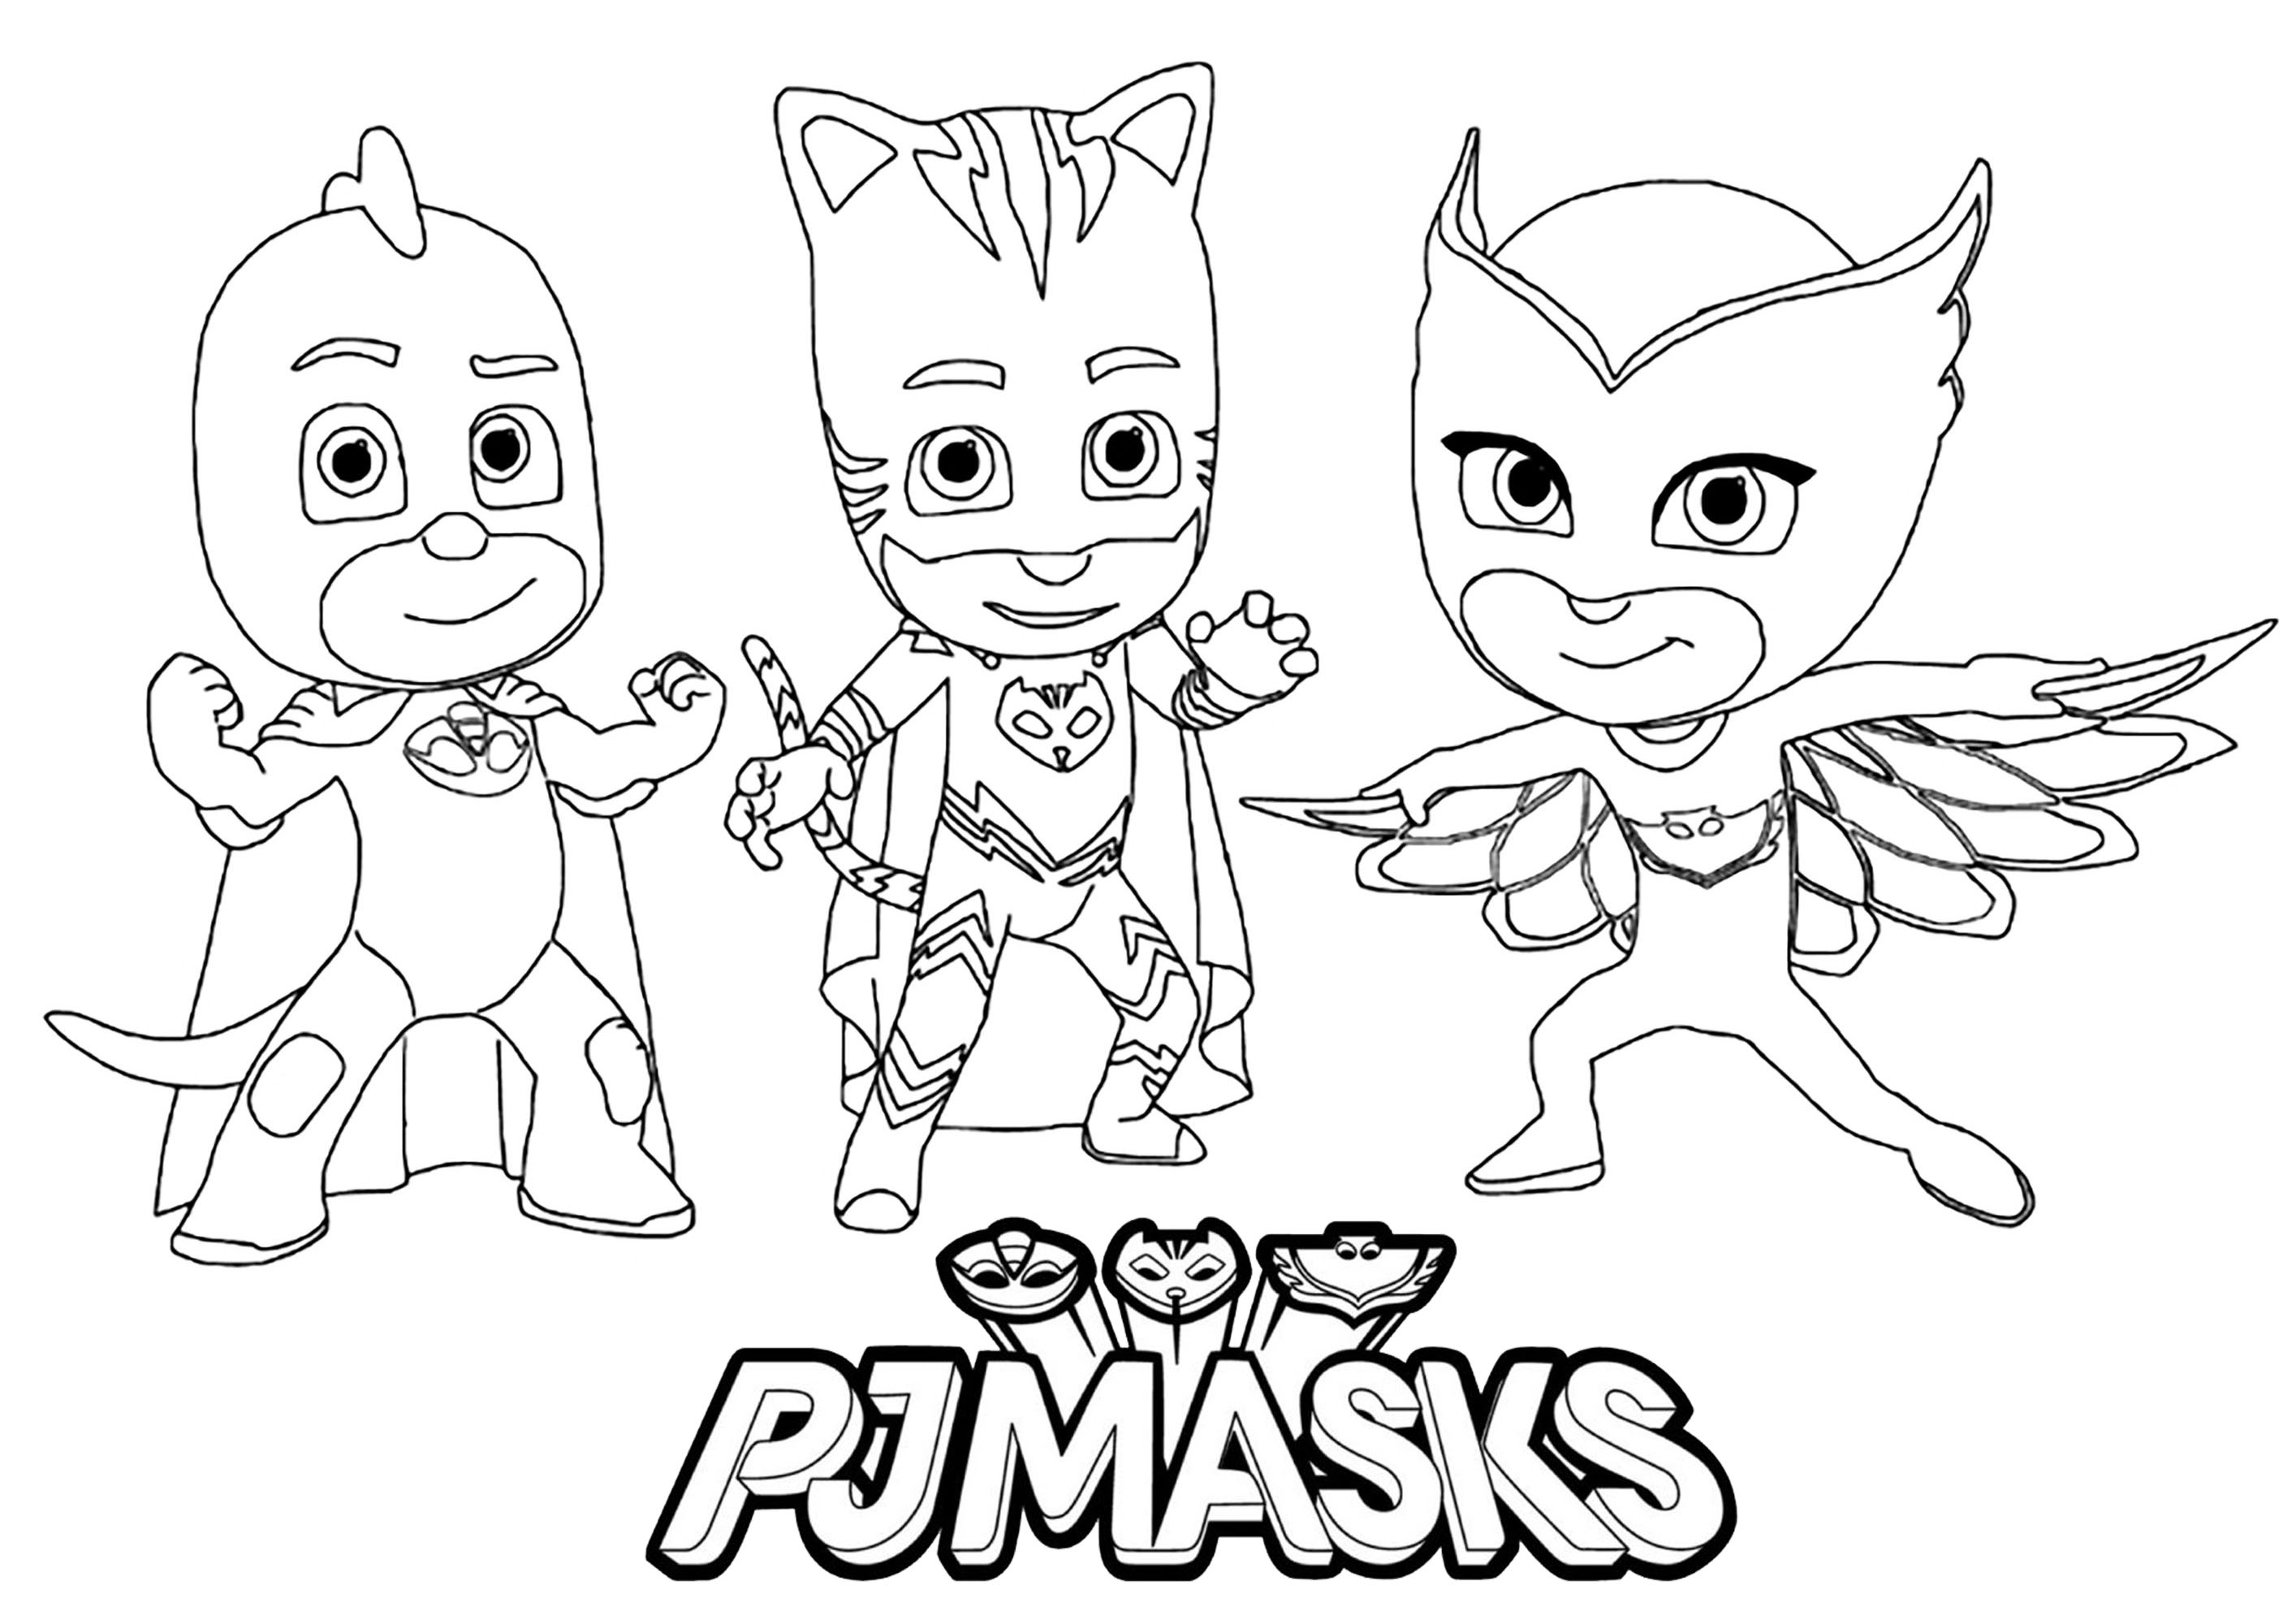 Personnages de Pyjamasques  (PJ Masks) avec le Logo de la série